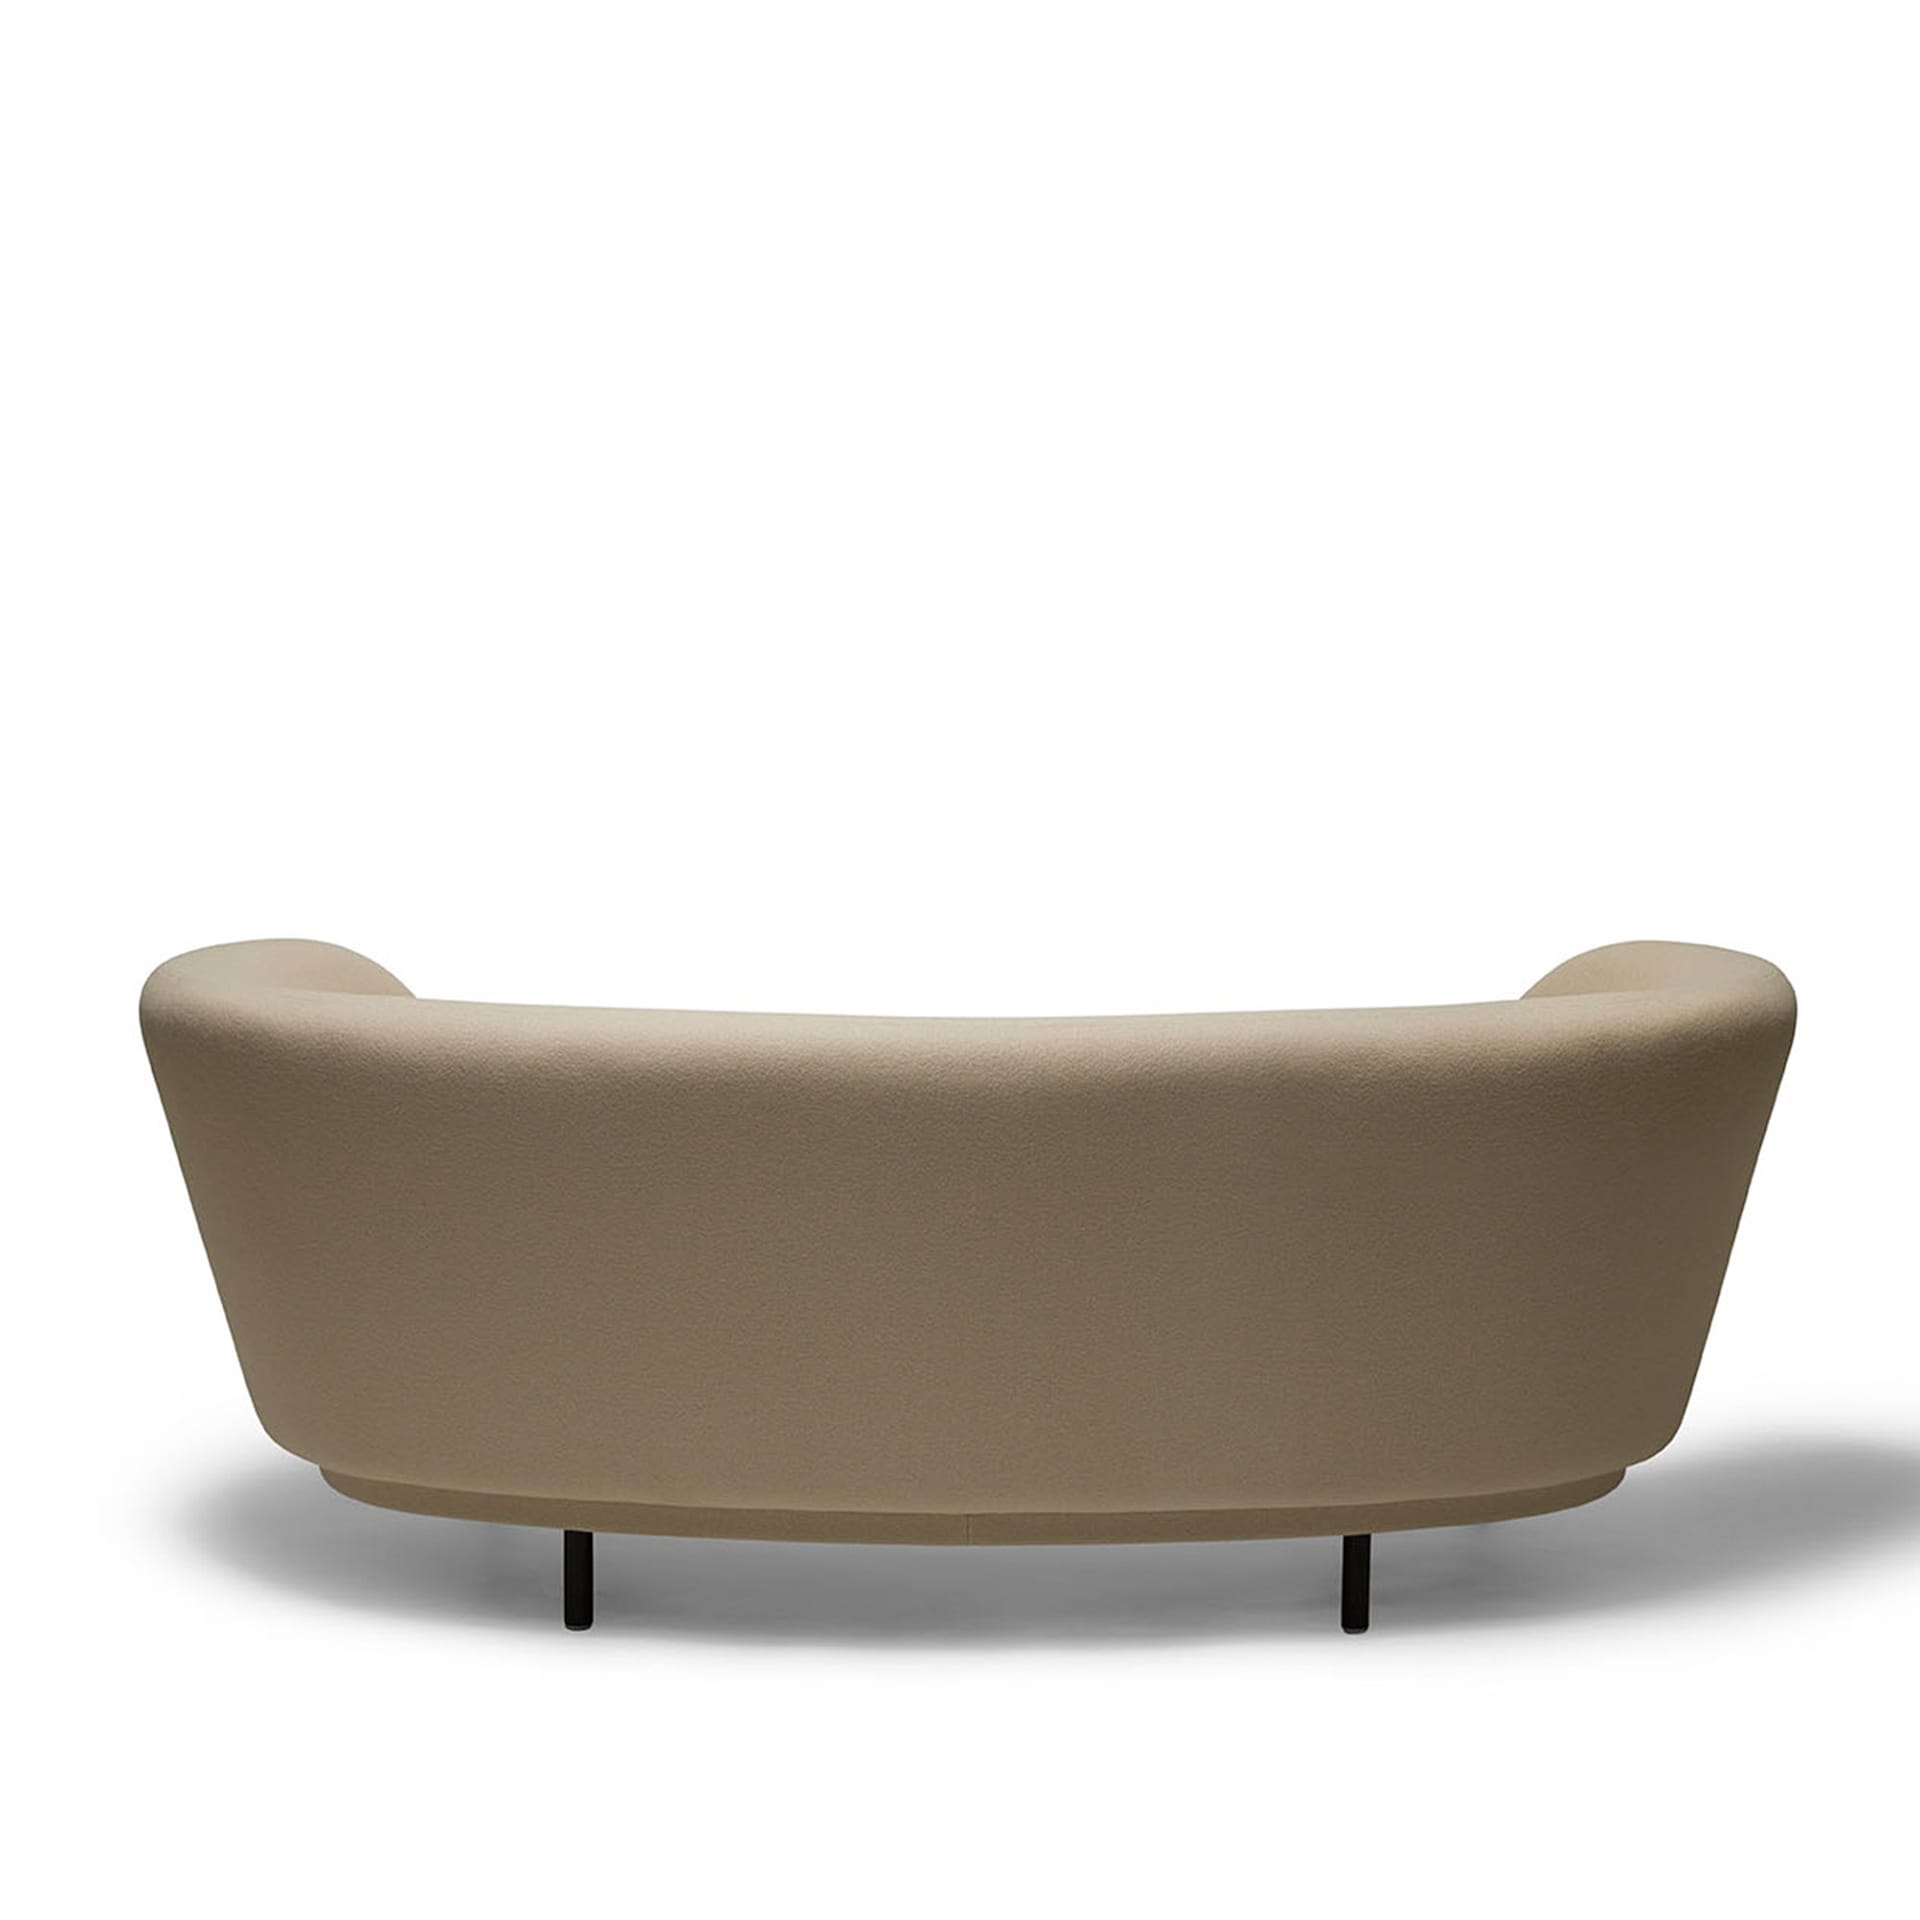 Dandy 2 Seater Sofa - Massproductions - NO GA